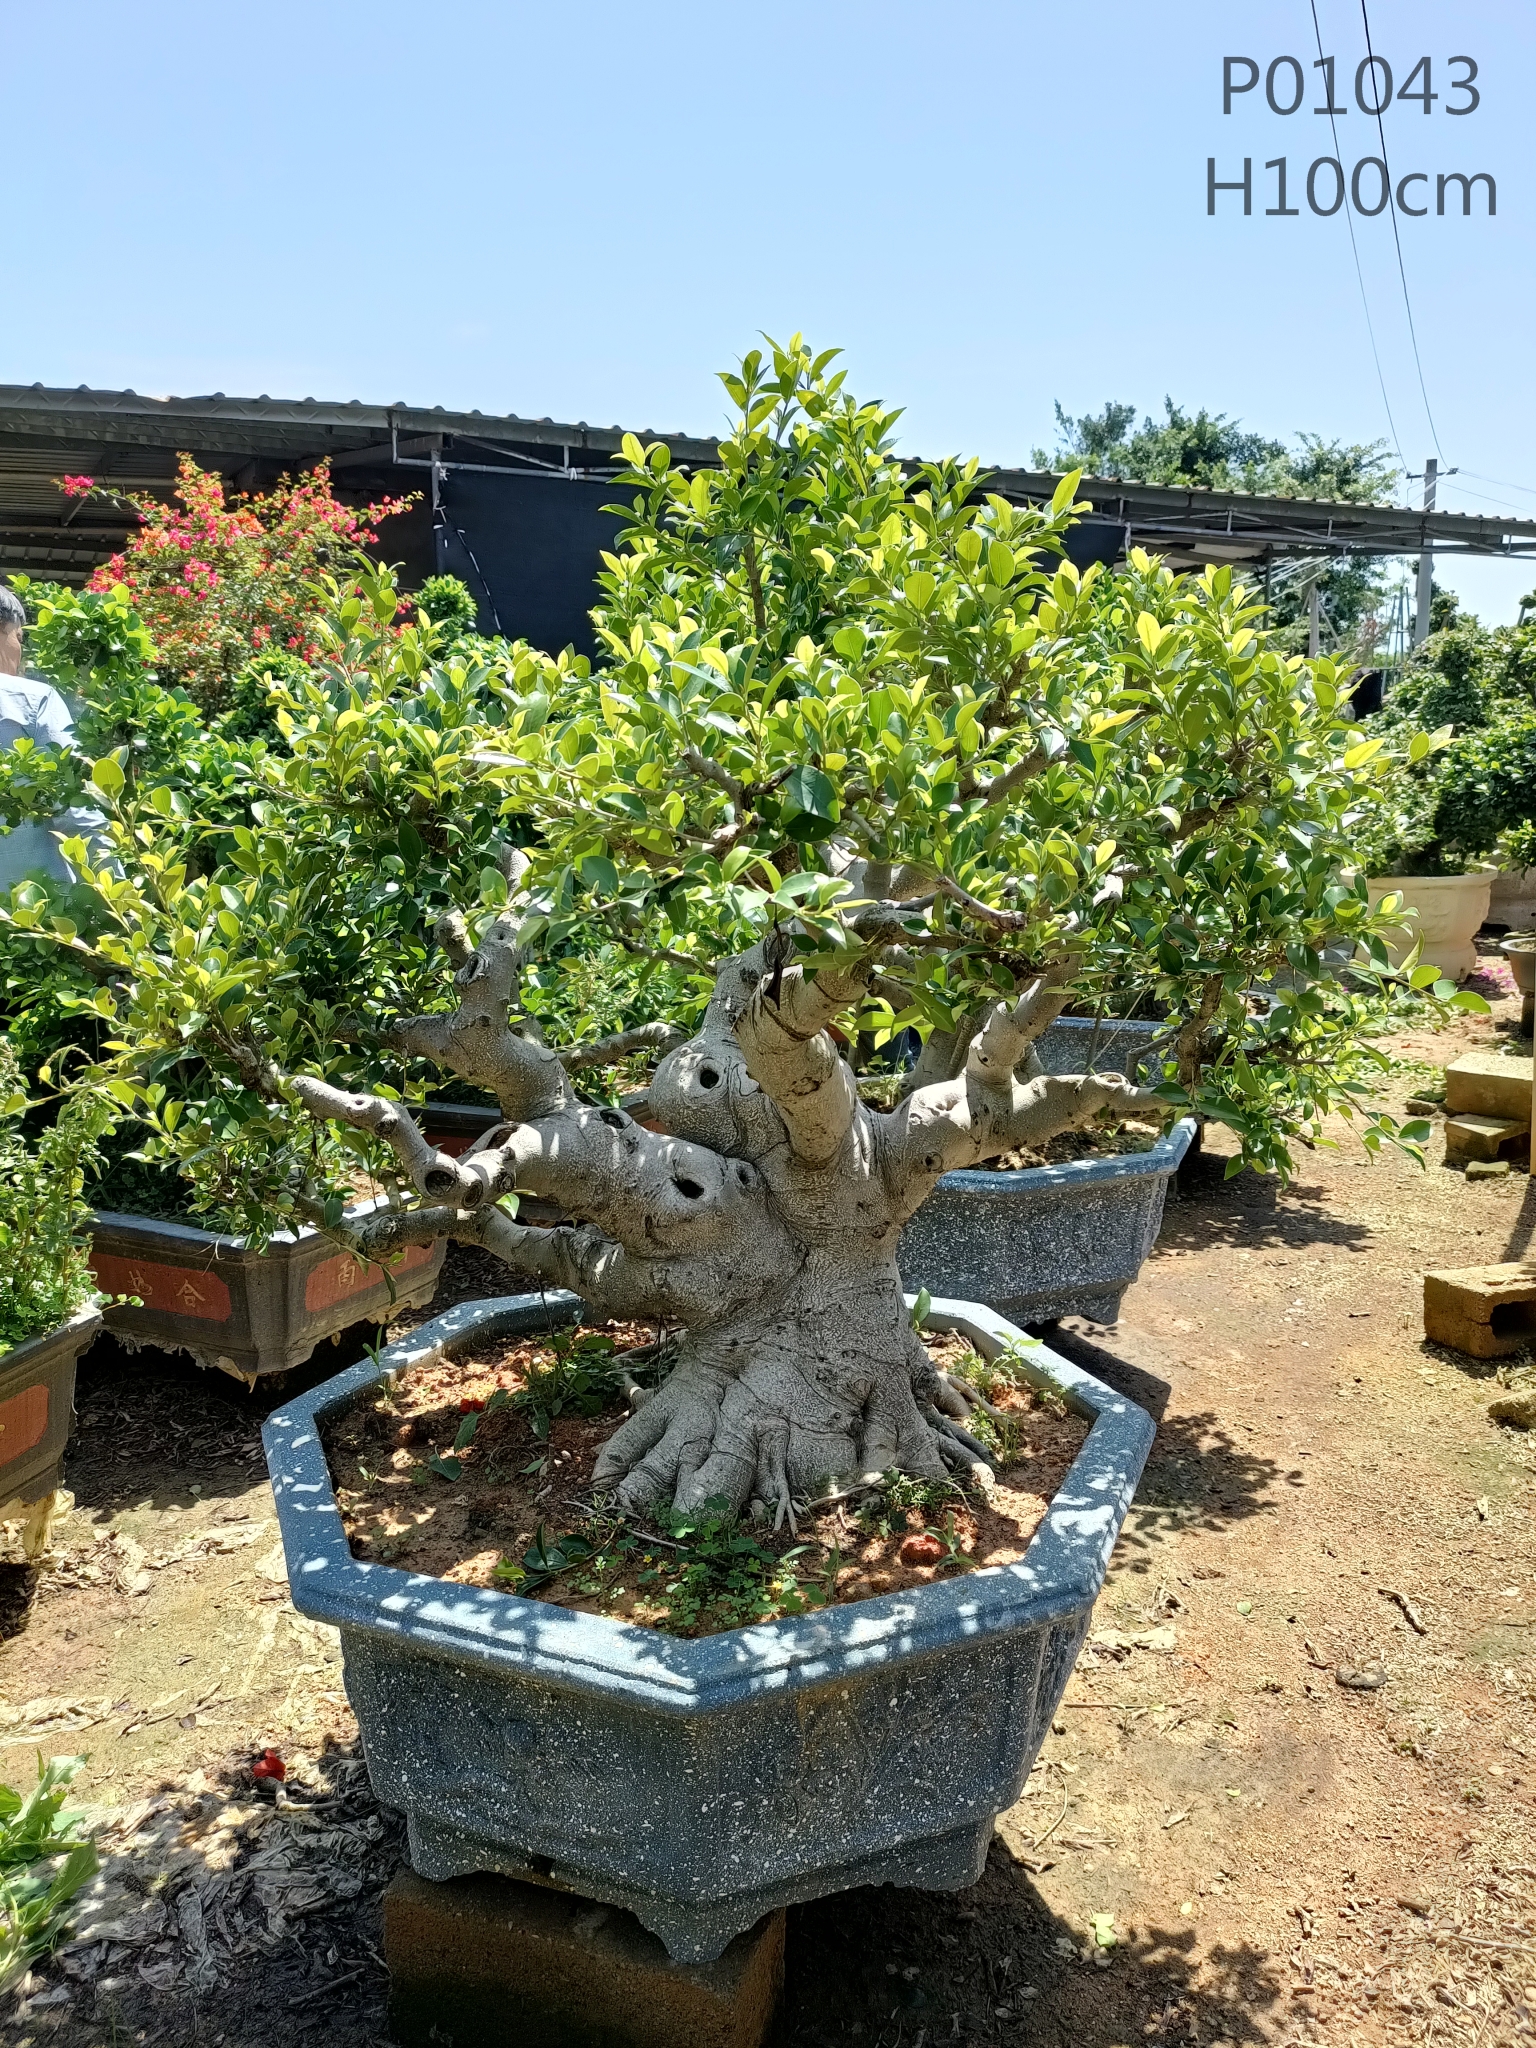 Girman Sinanci Daban-daban Tsohuwar Fiucs Microcarpa Tsire-tsire na waje Ficus Stump Ficus Bonsai